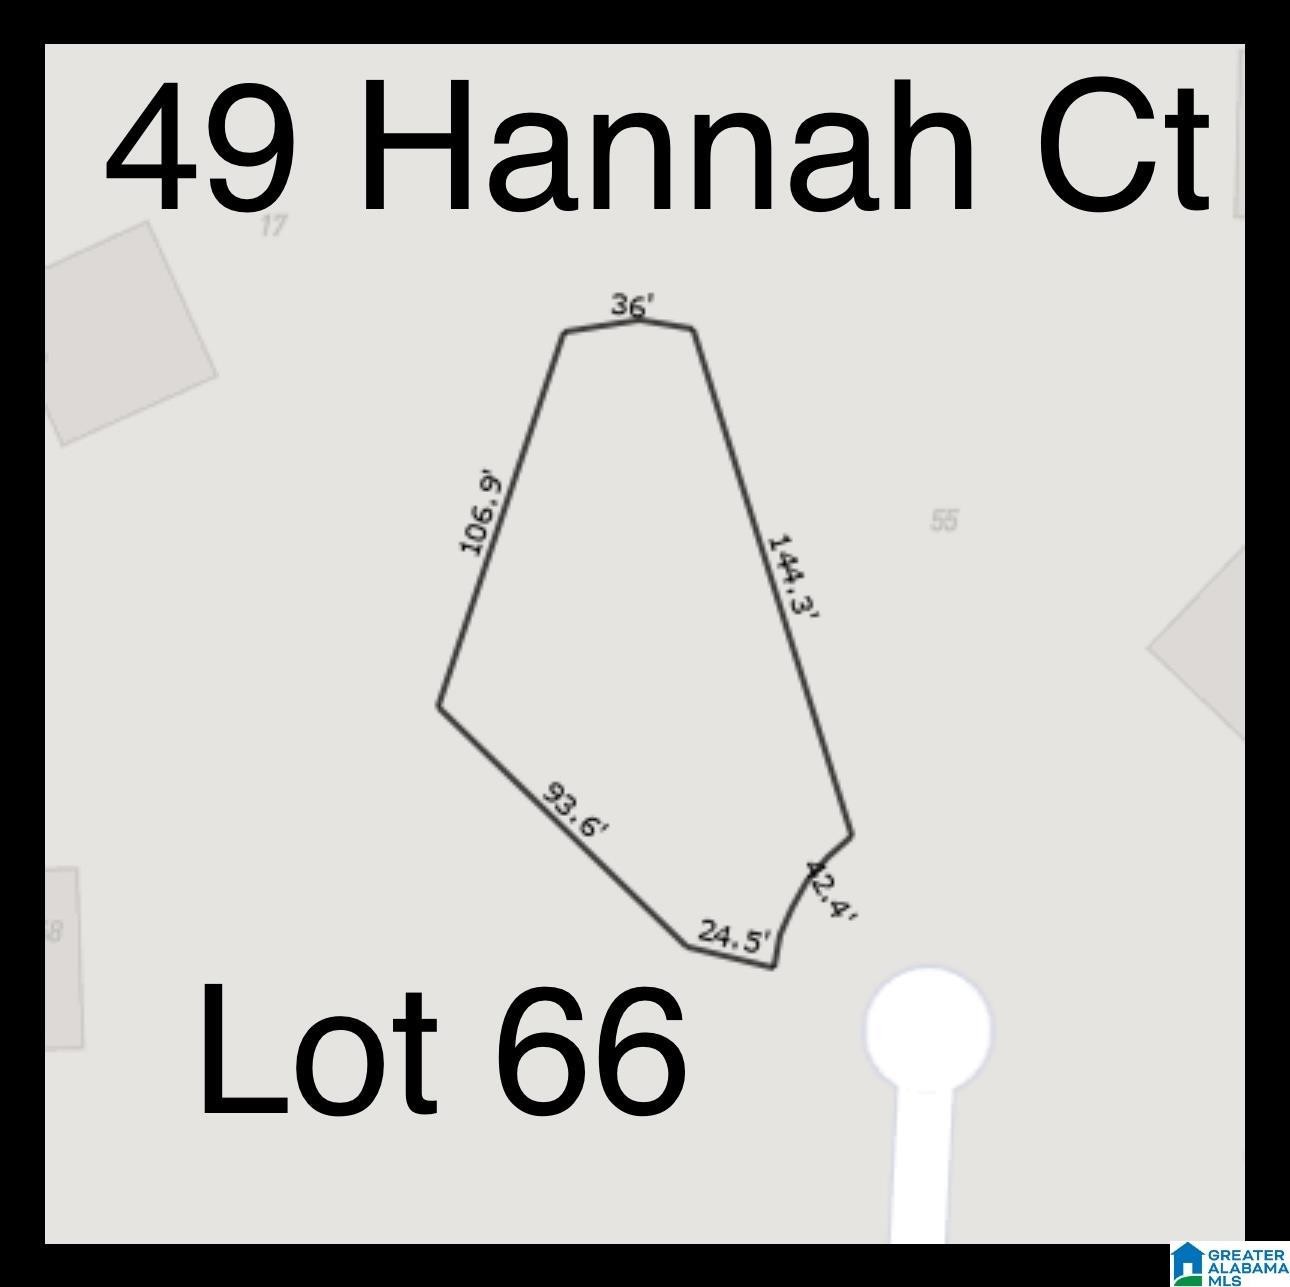 1. 49 Hannah Court